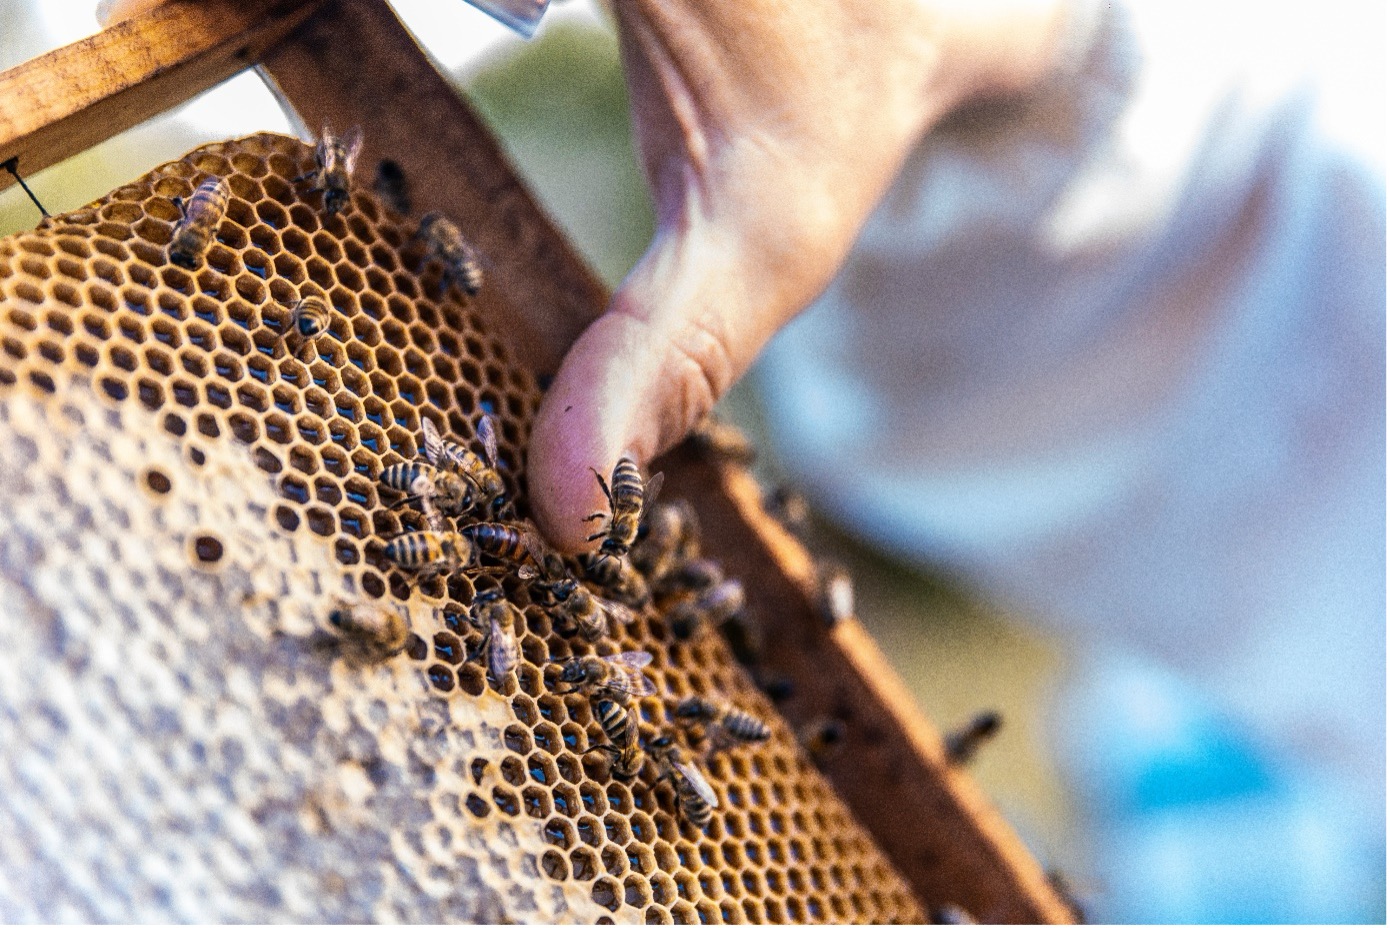 Das Bild zeigt eine Bienenwabe mit Bienen, welche von einer Person gehalten wird. Von der Person sieht man nur den Daumen